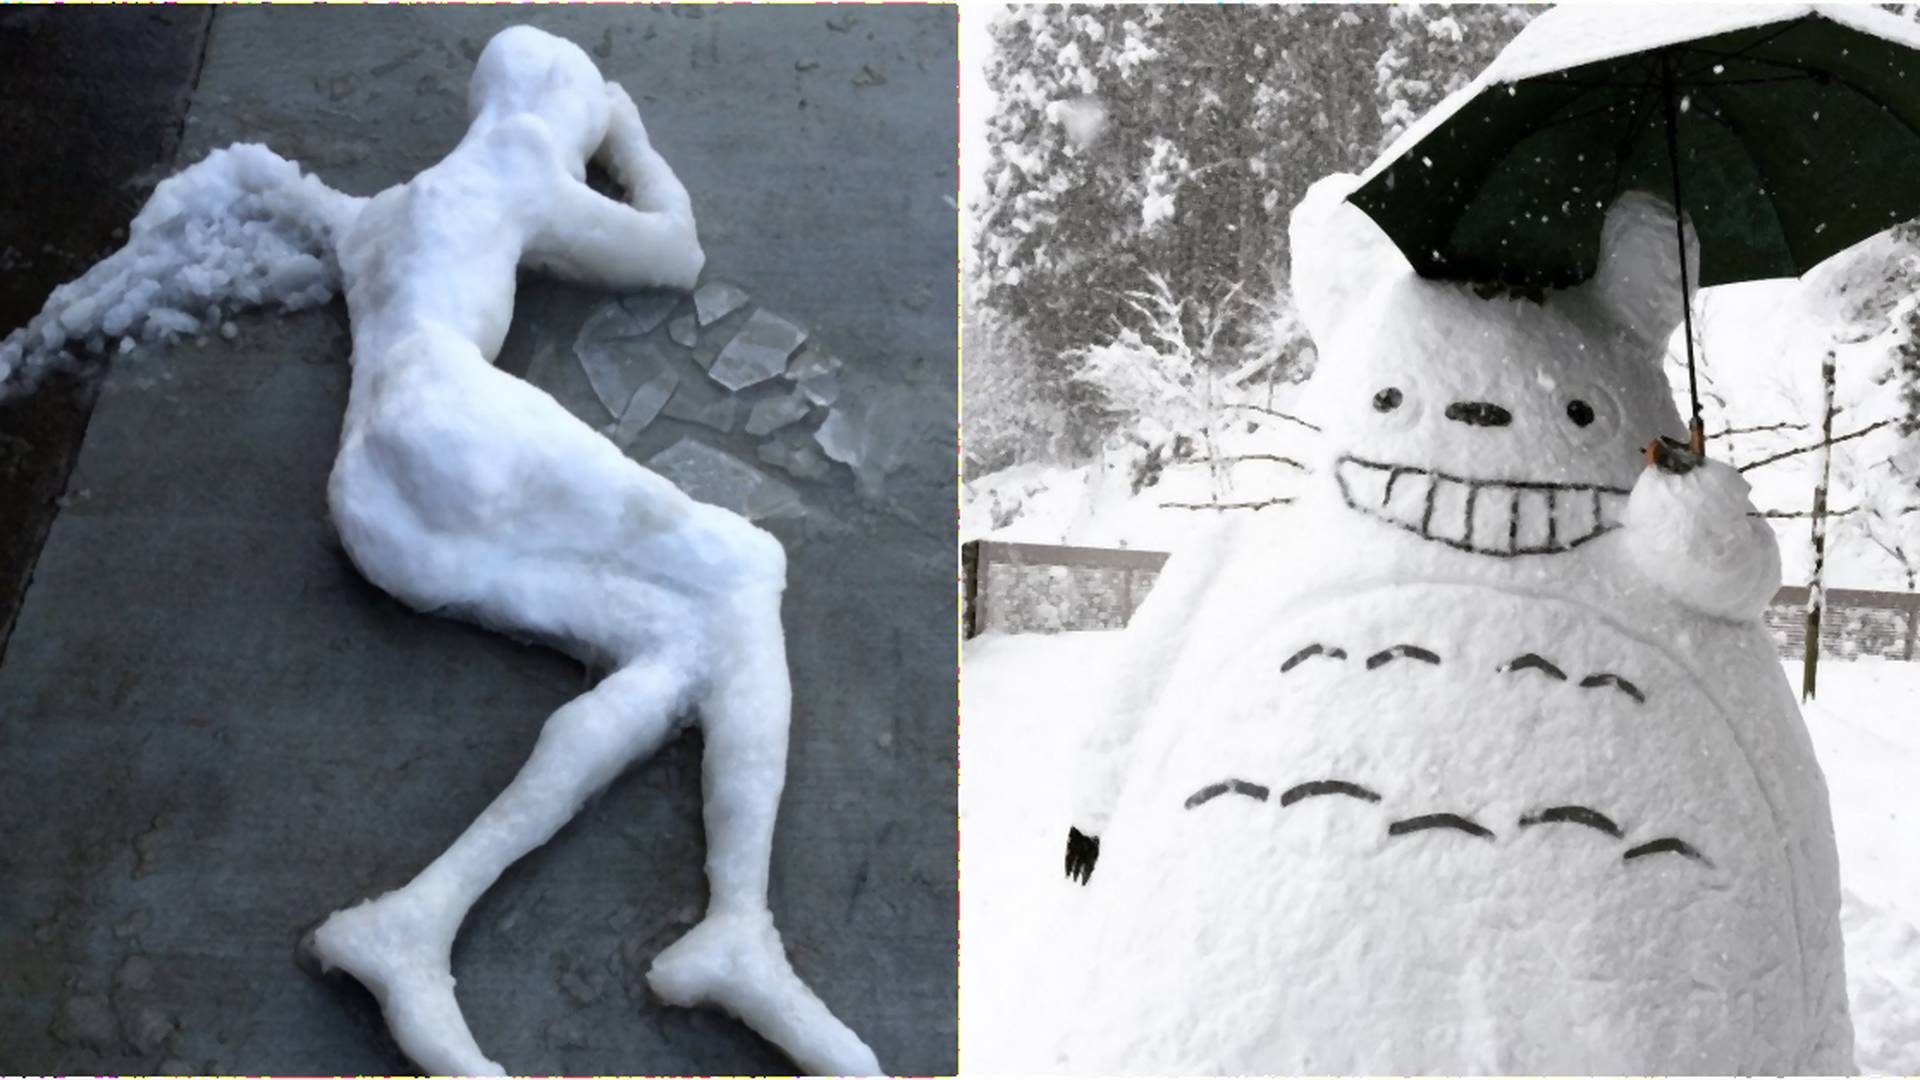 Ľudia v Japonsku sa tešia zo snehu: Takéto kreatívne sochy z neho vytvorili